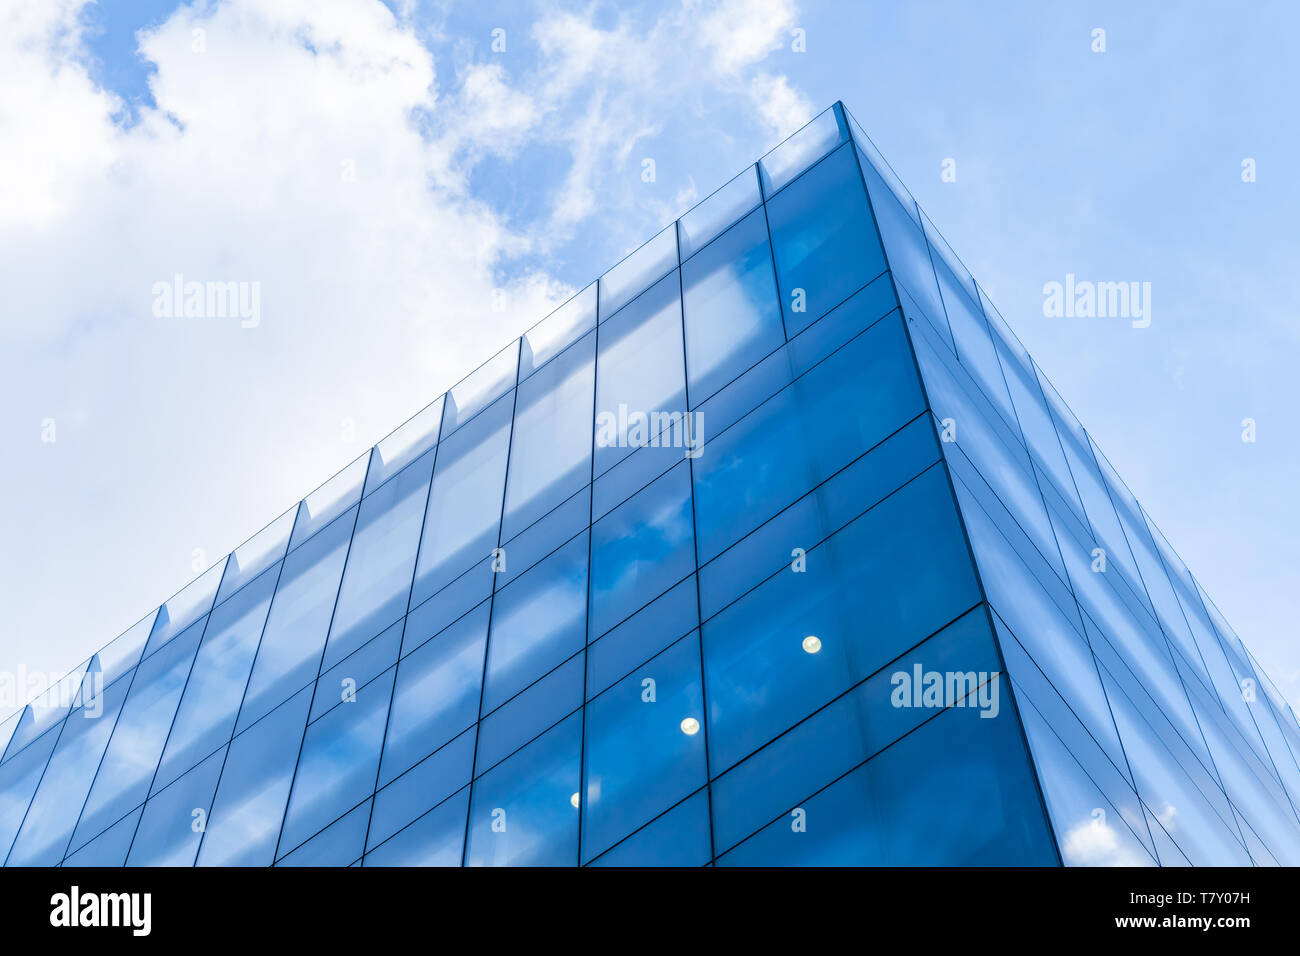 Abstrakte moderne Architektur Fragment, Ecke von Wänden aus glänzendem Glas und Stahl unter blauen bewölkten Himmel Stockfoto